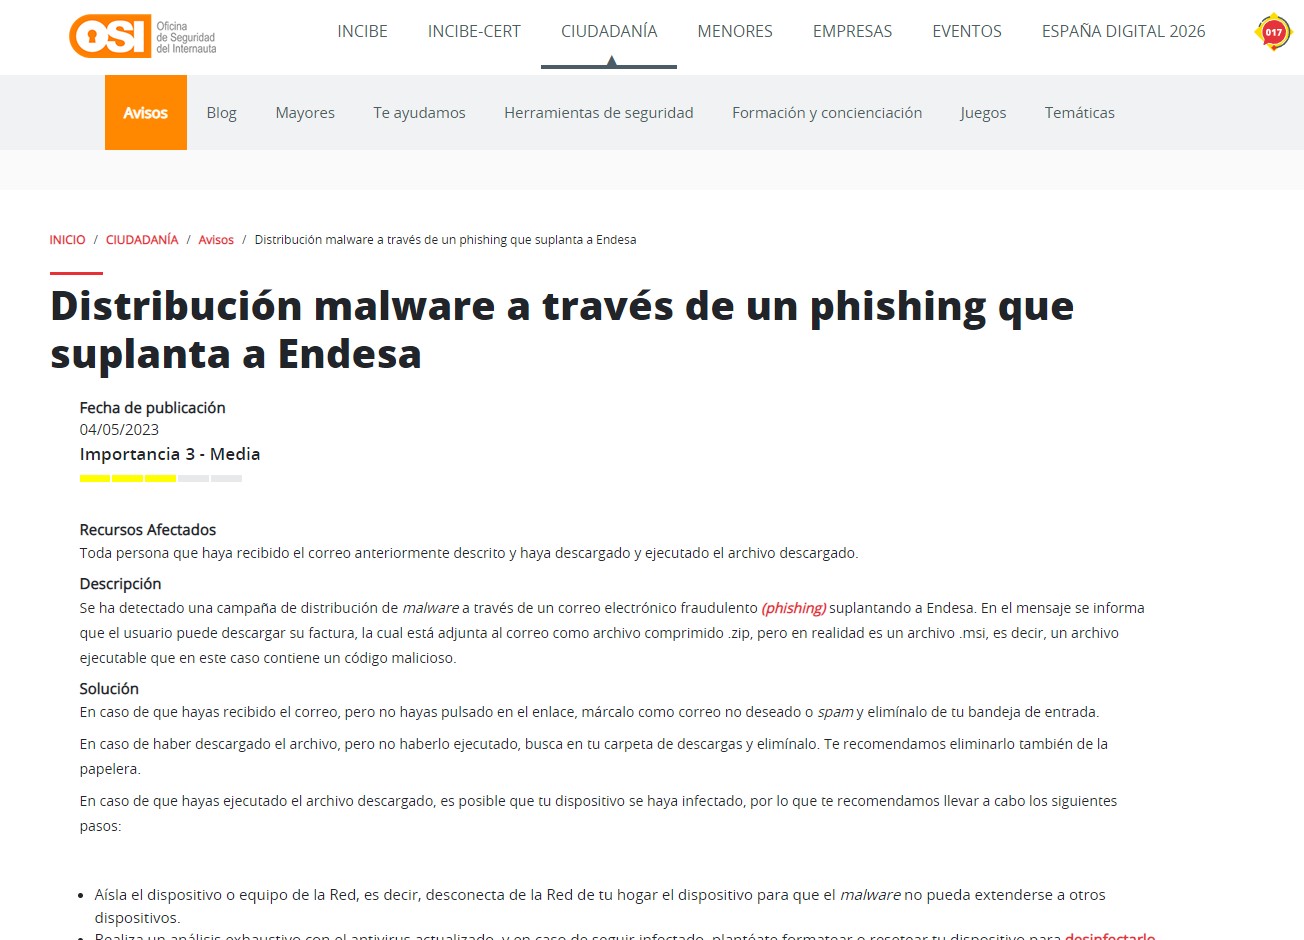 Distribución malware a través de un phishing que suplanta a Endesa